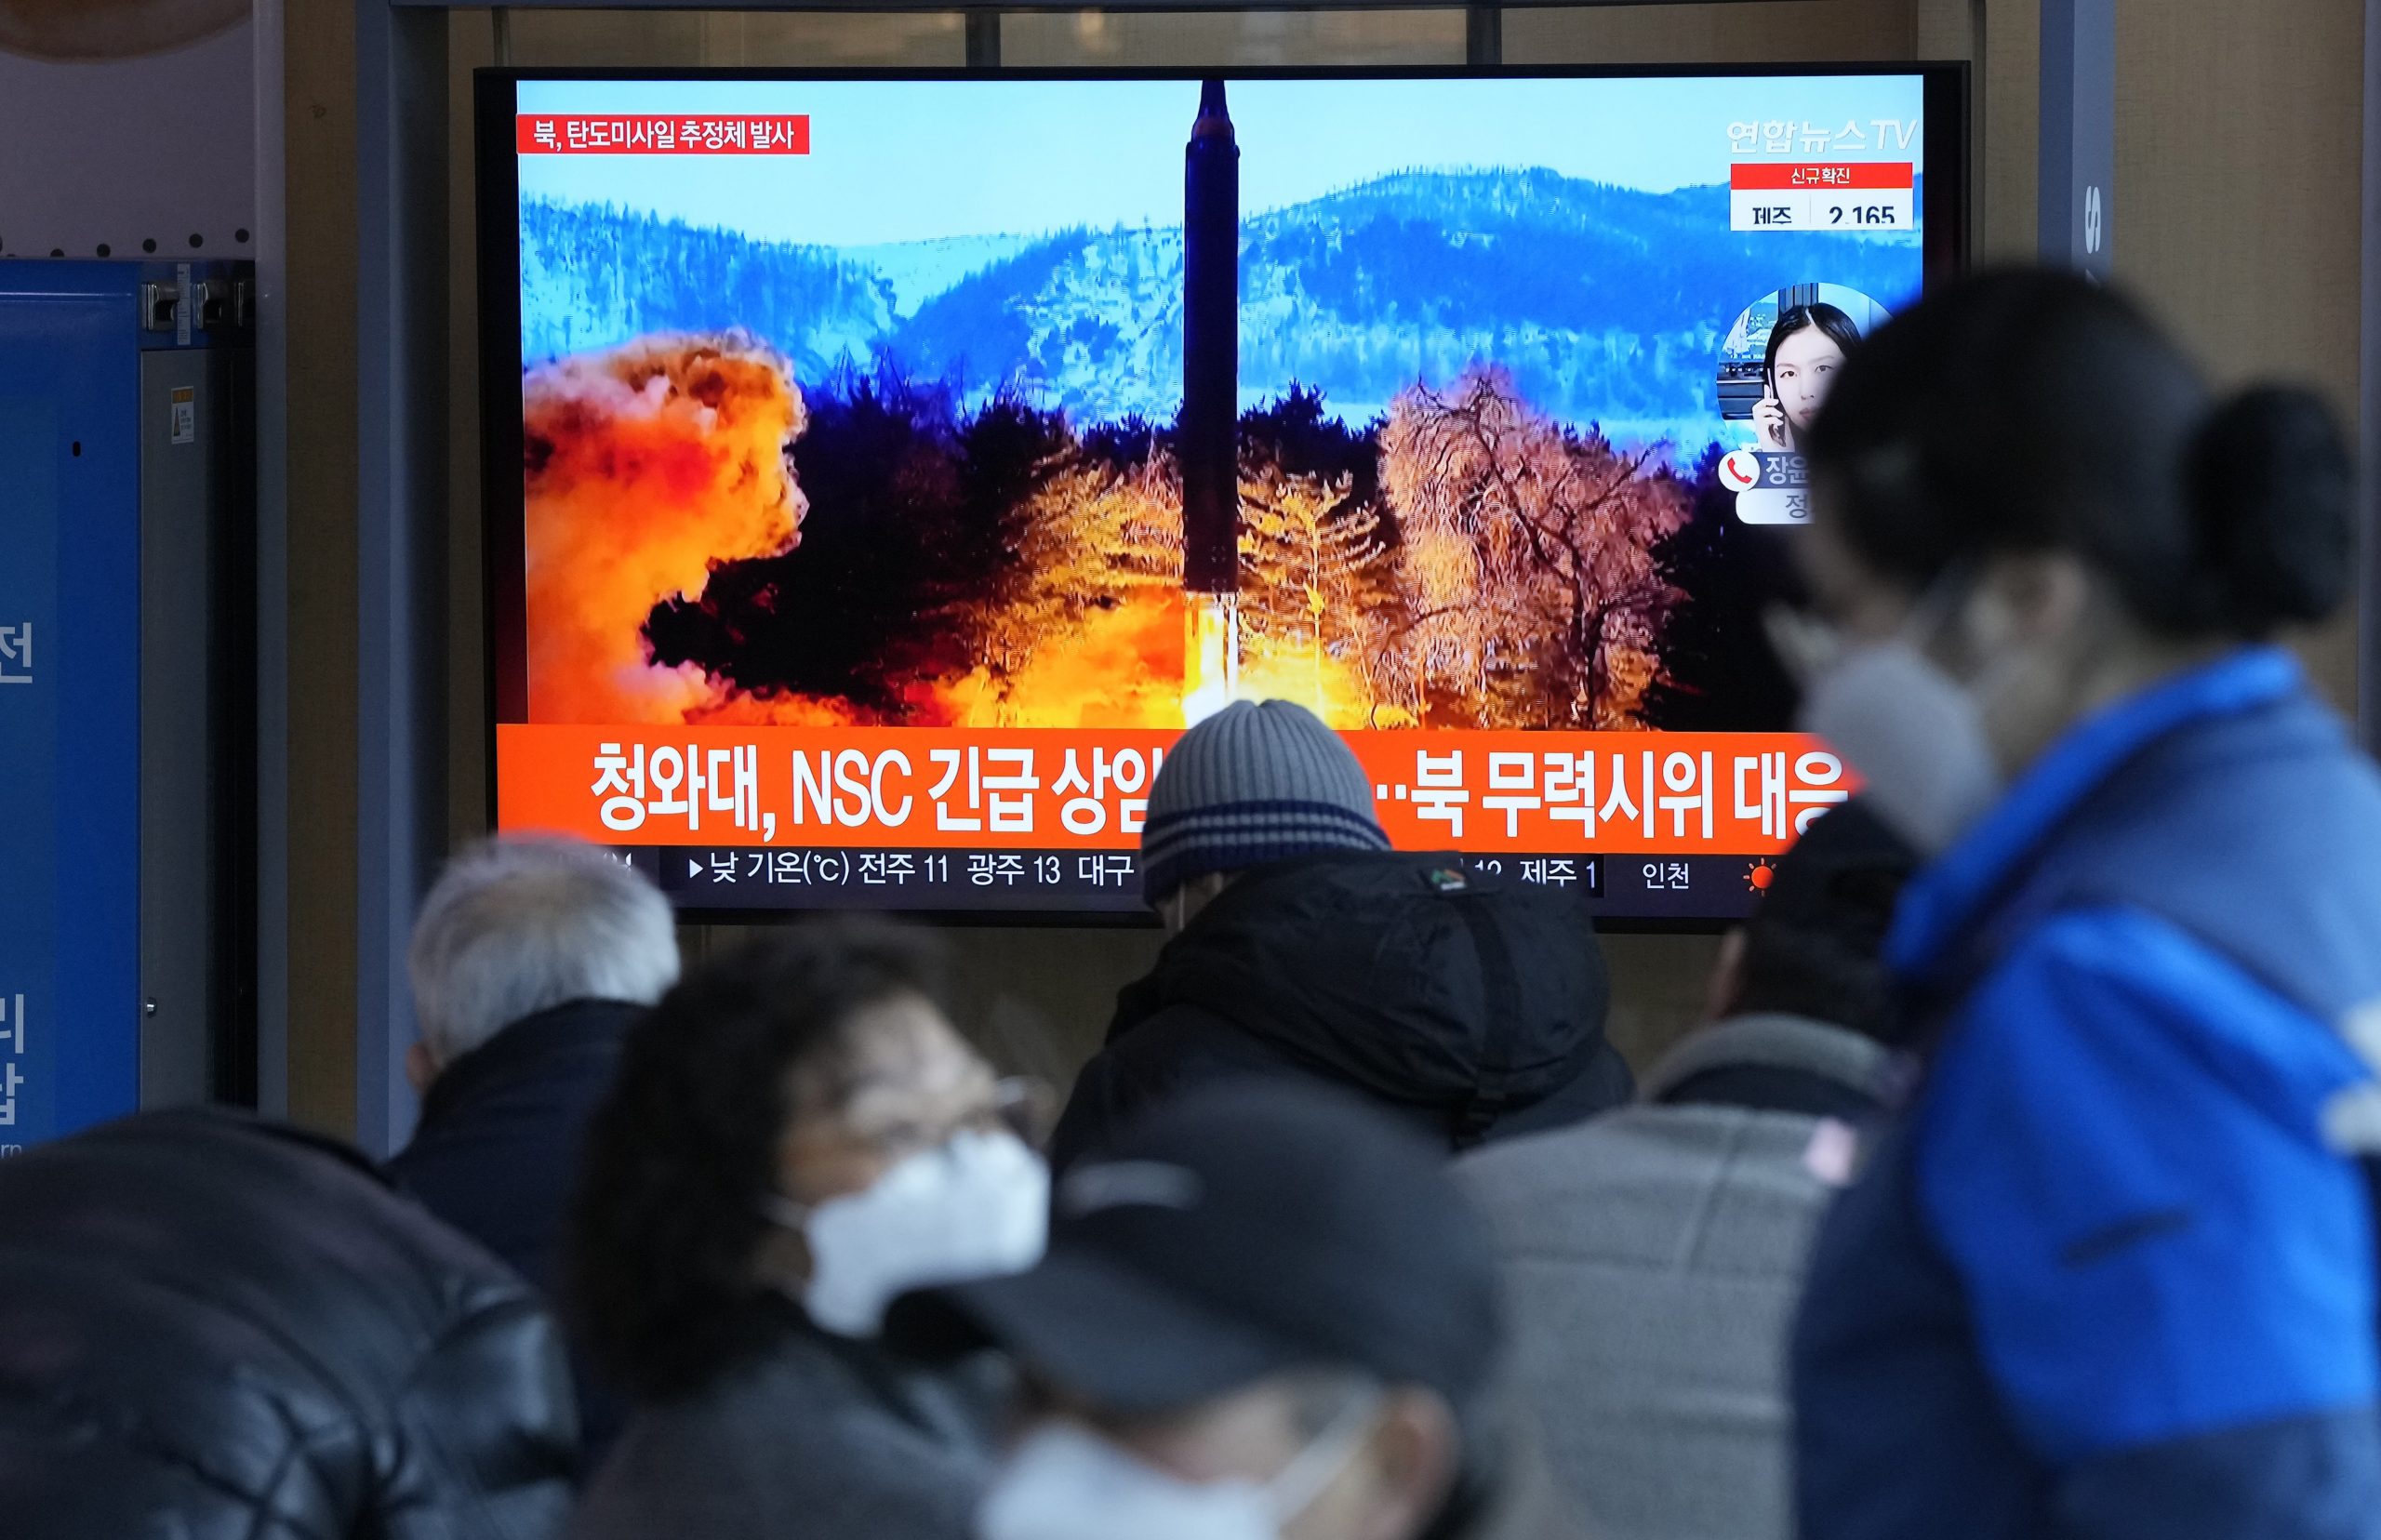 朝鲜今年第八次发射不明物体 日称疑似弹道导弹